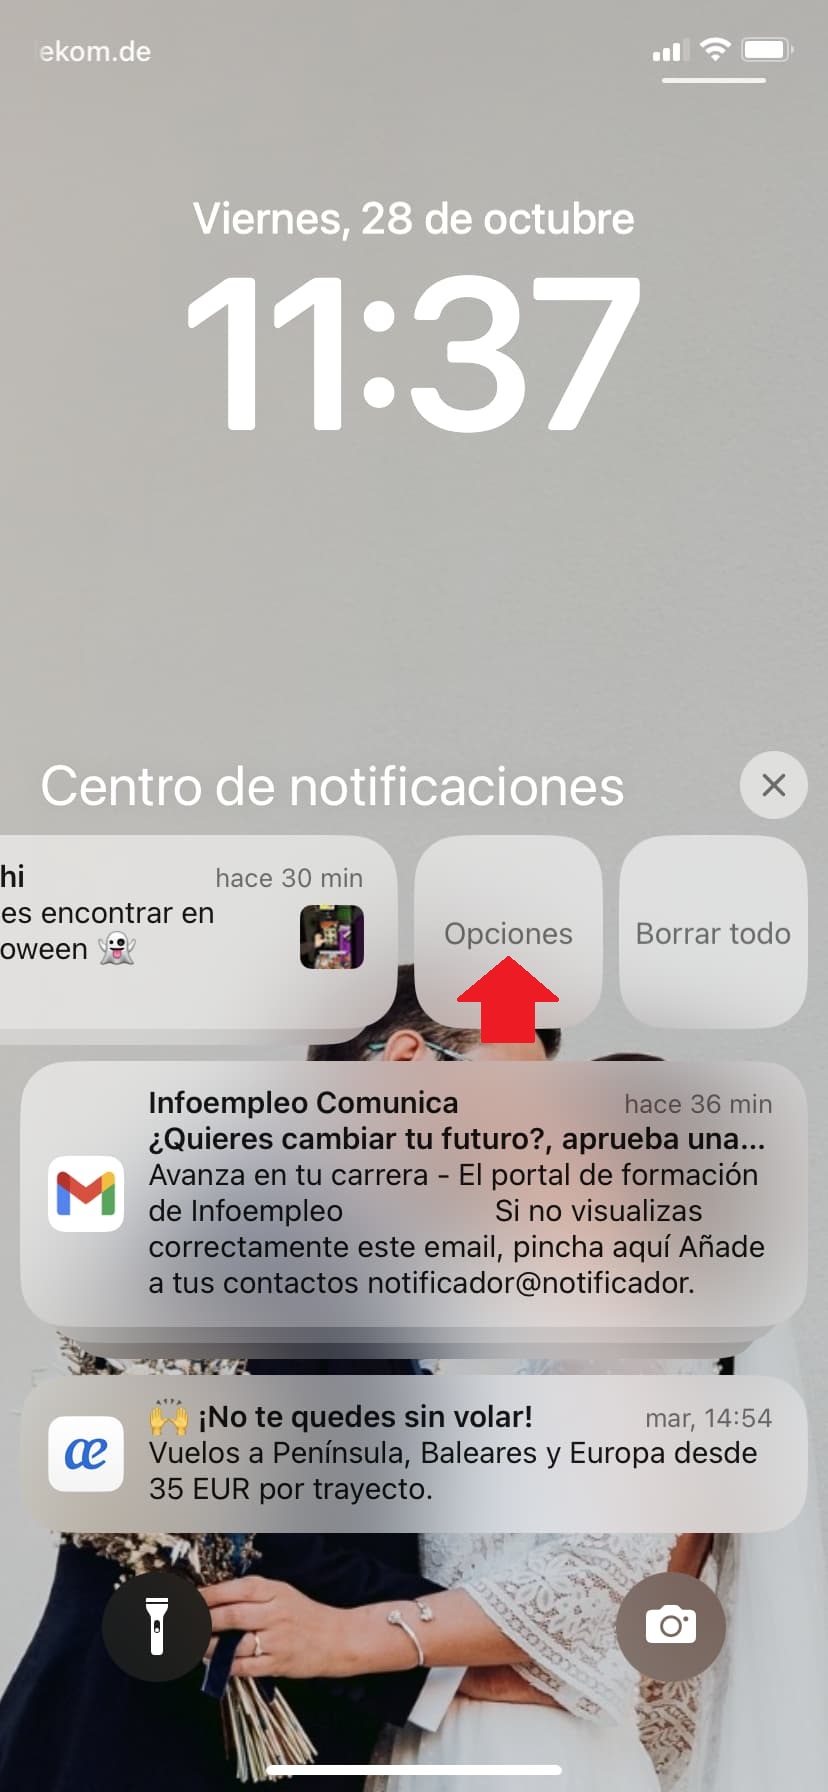 silenciar o desactivar notificaciones en el historial de notificaciones de iOS en el iPhone 1